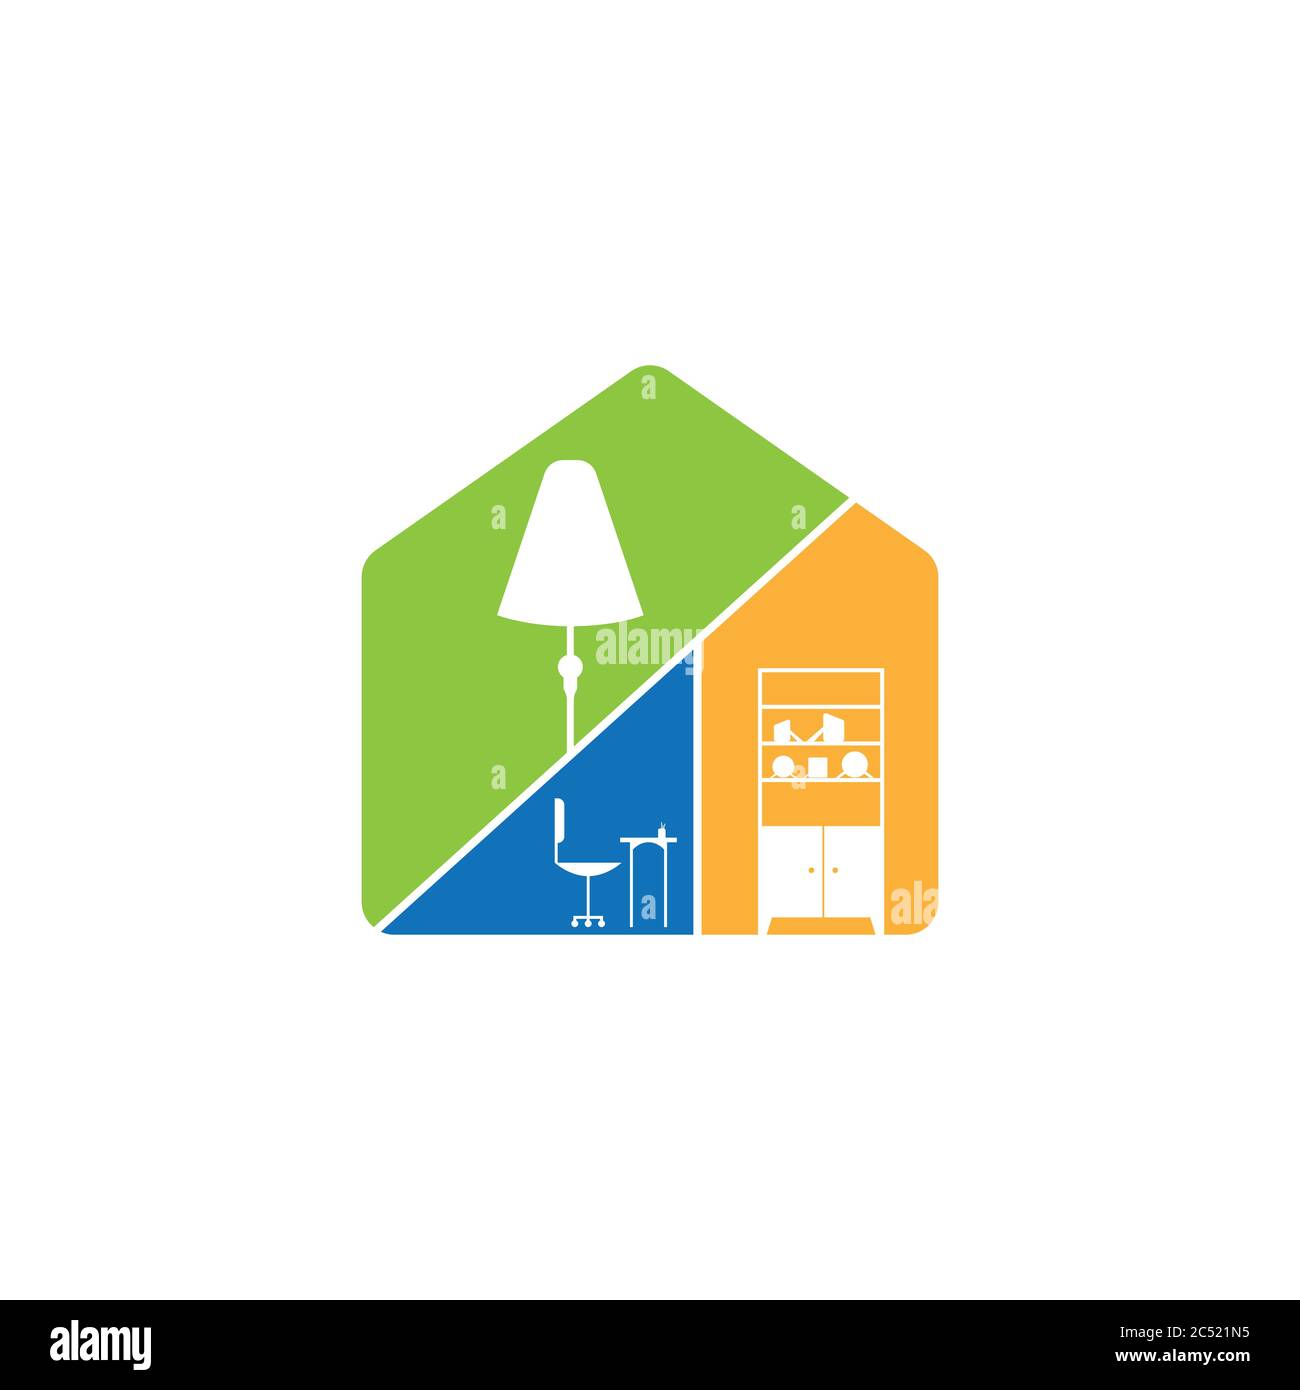 Creative modern home interior logo design vector image. Home interior logo design vector image. Home ideas and inspiration Stock Vector